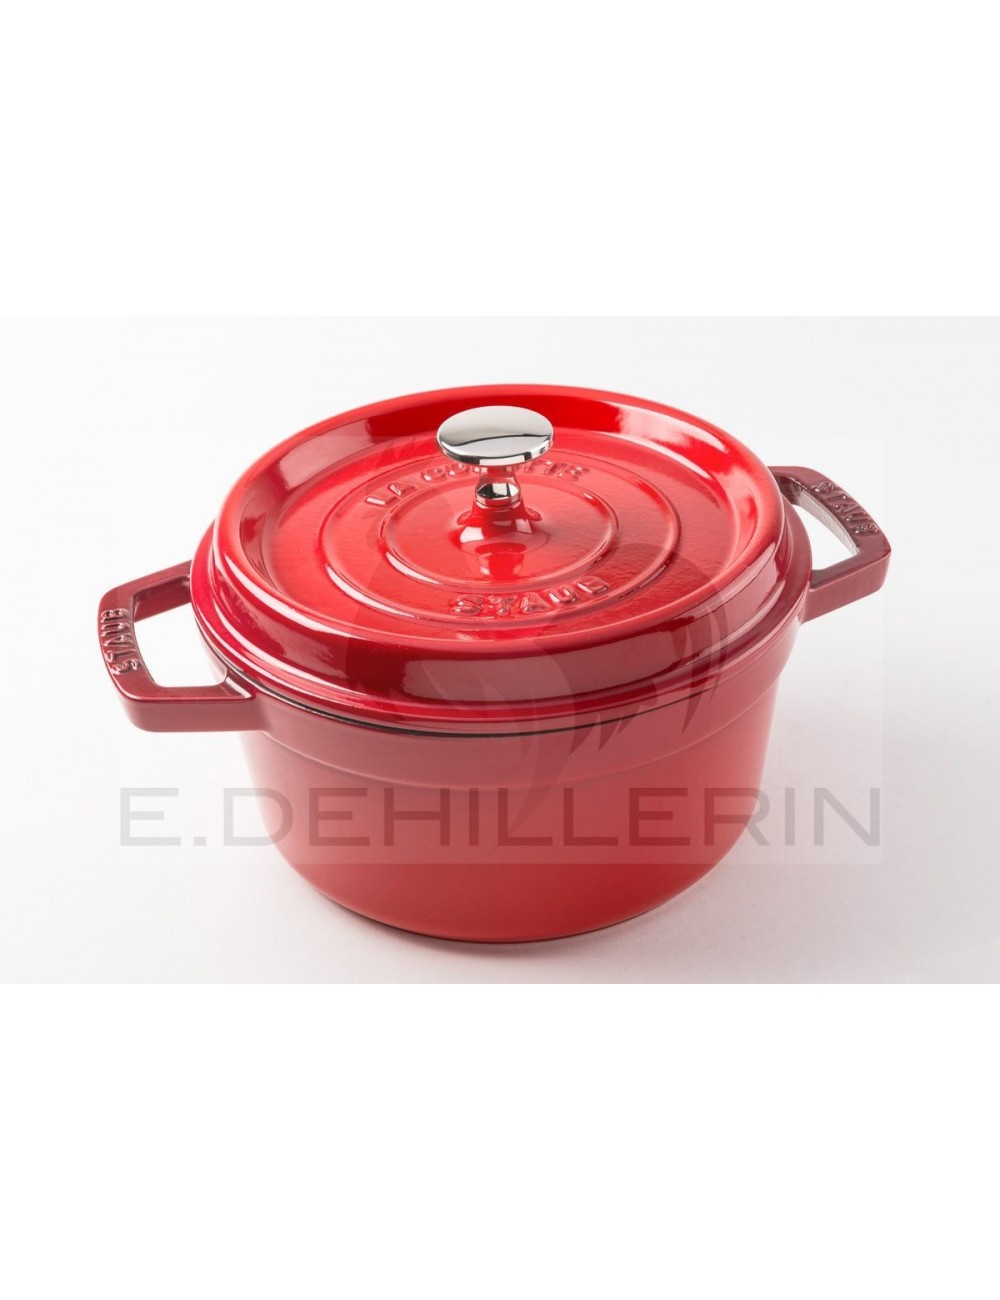 https://www.edehillerin.fr/895-large_default/casserole-cast-iron-round-red-staub.jpg